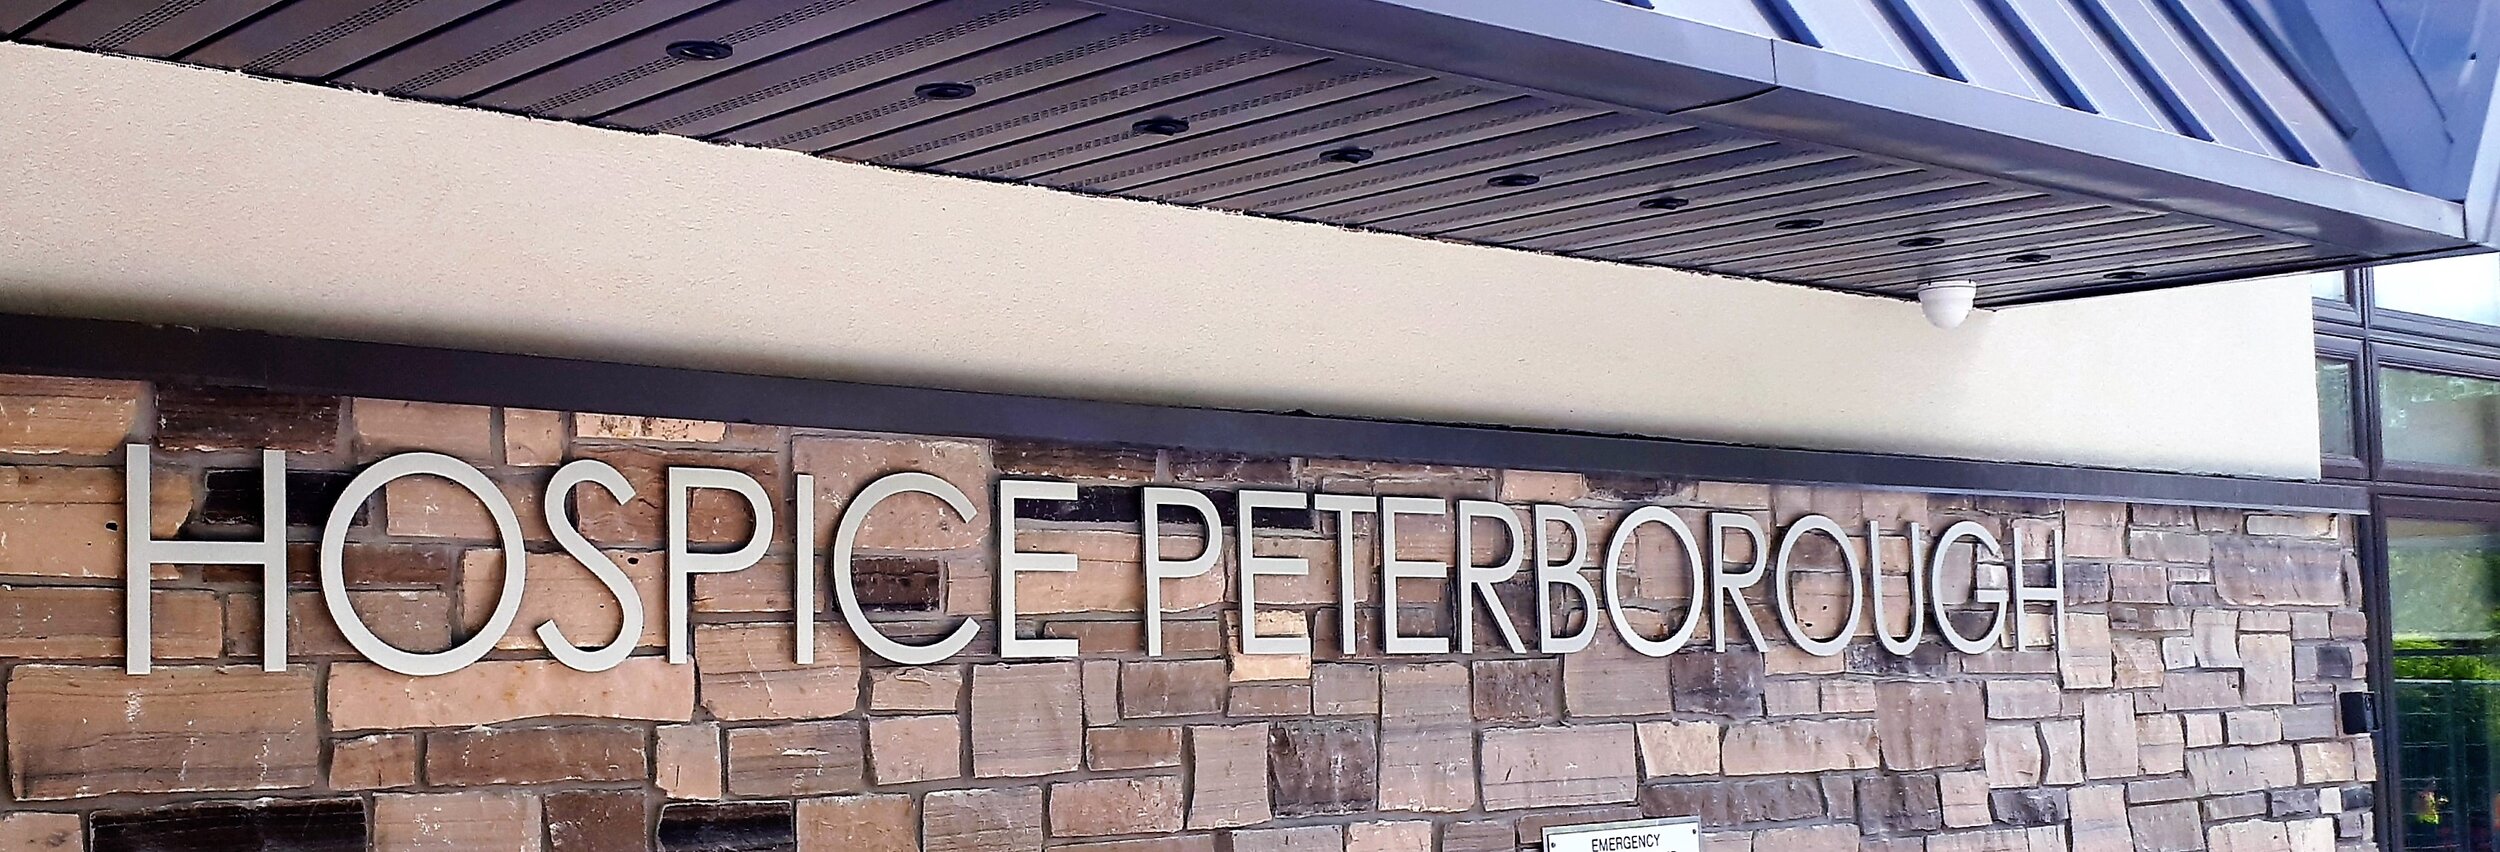 Peterborough Petes begin regular season with no COVID-19 measures